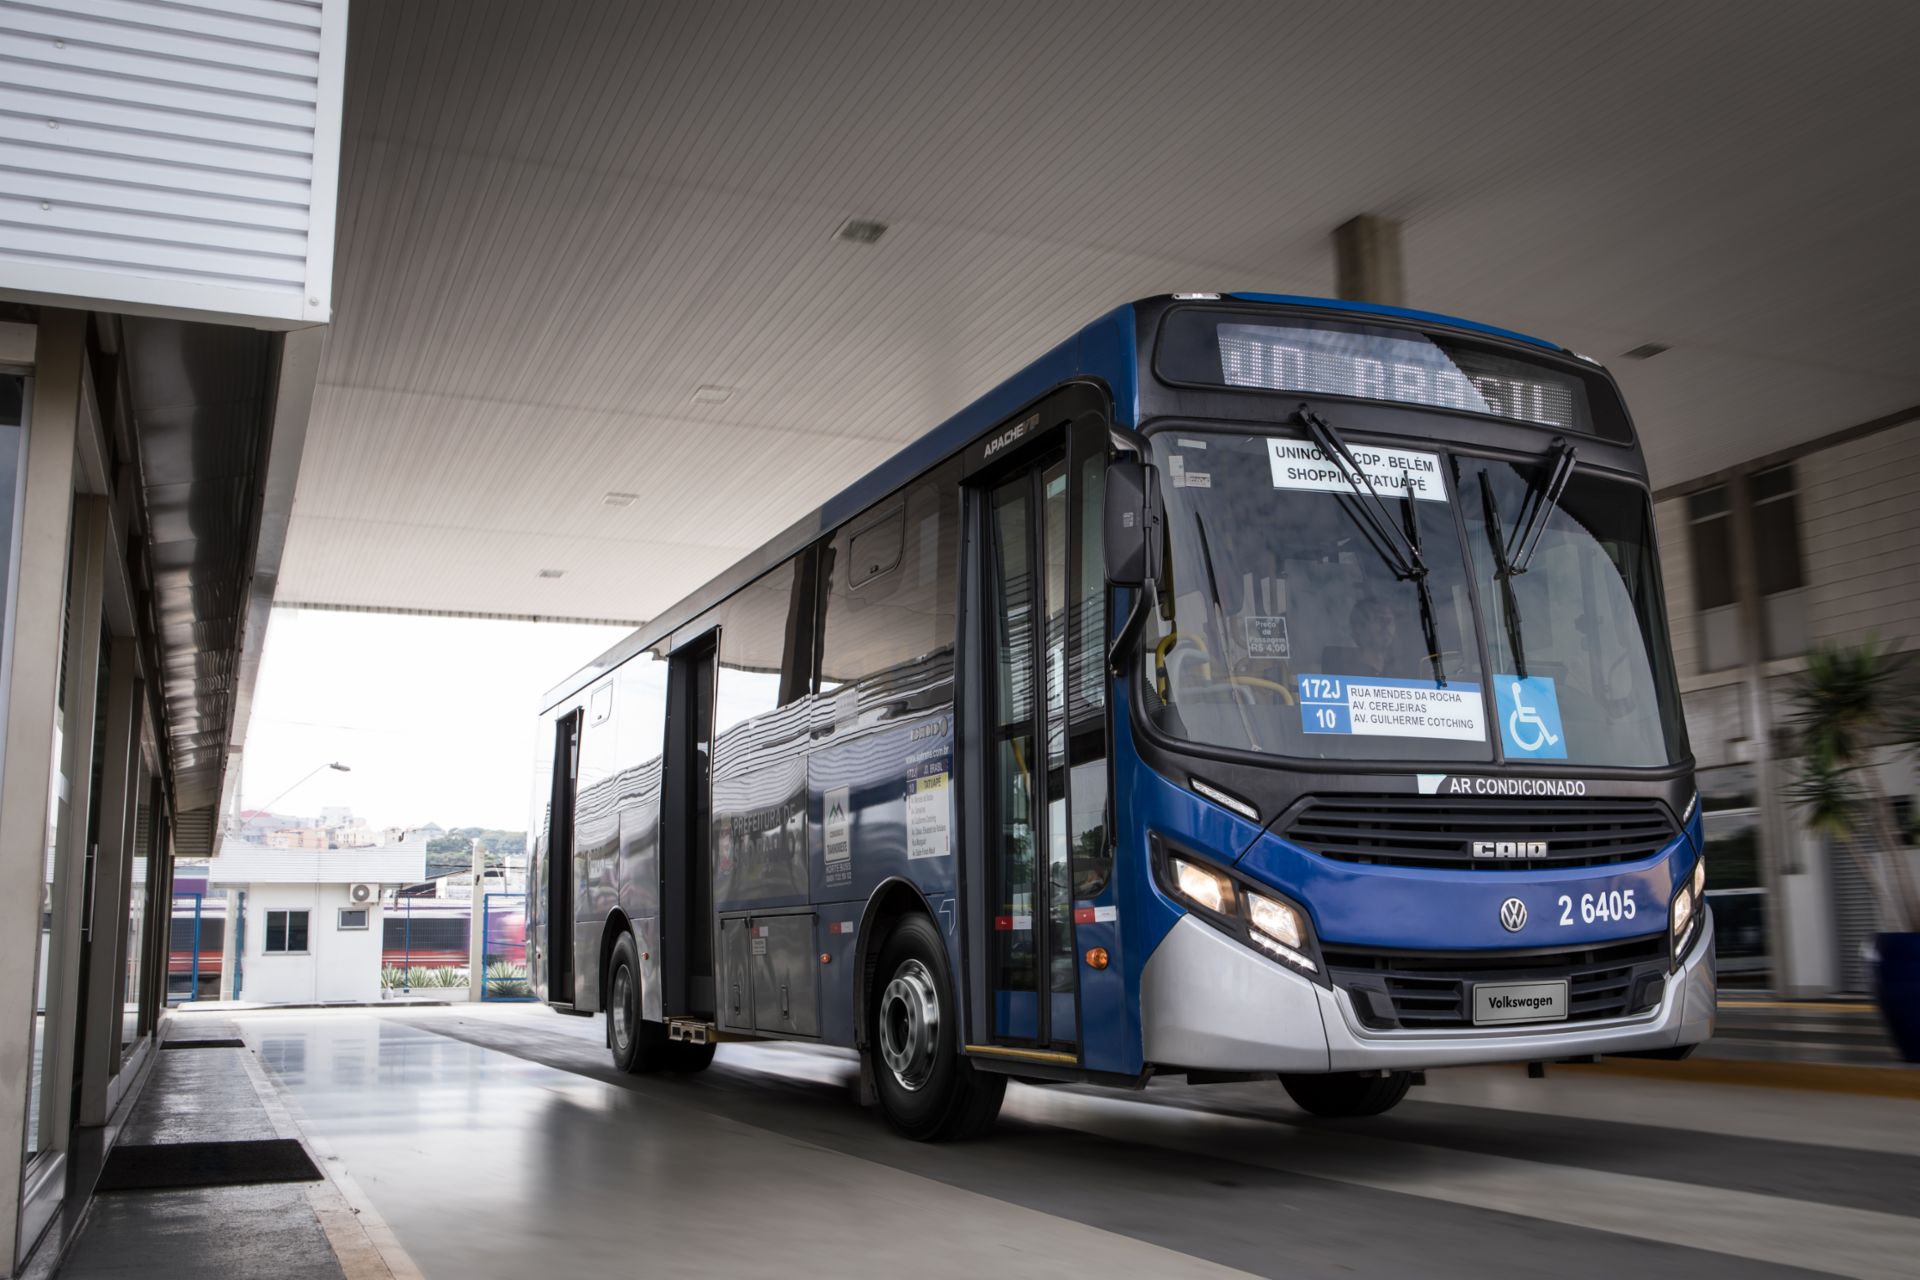 Volkswagen Caminhões e Ônibus verfügt über 25 Jahre Erfahrung und Know-how in maßgeschneiderten Bussen.
                 